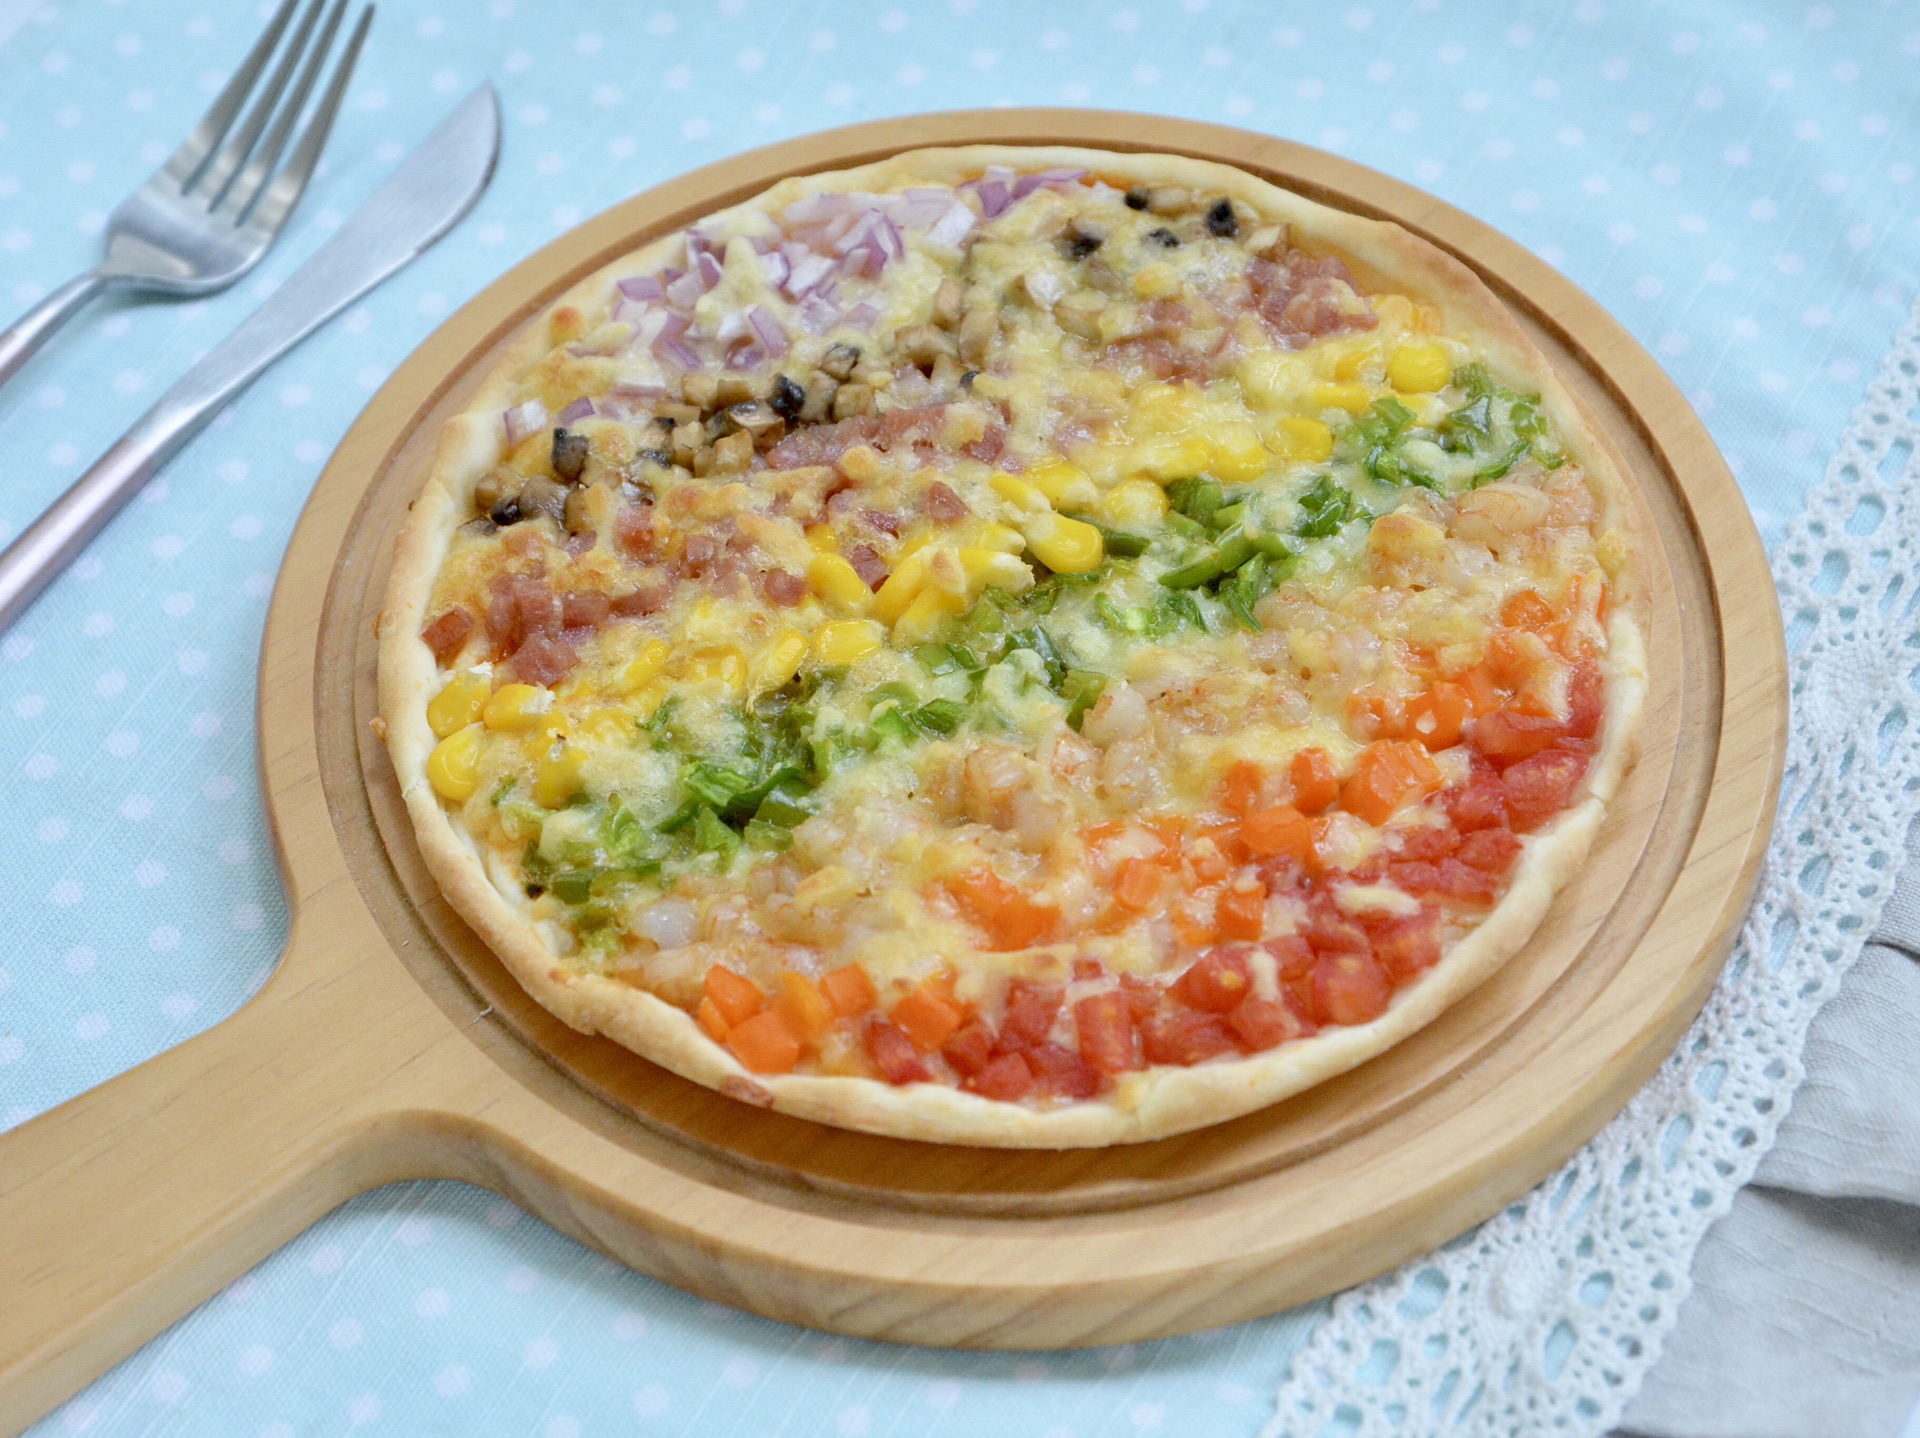 彩虹披萨